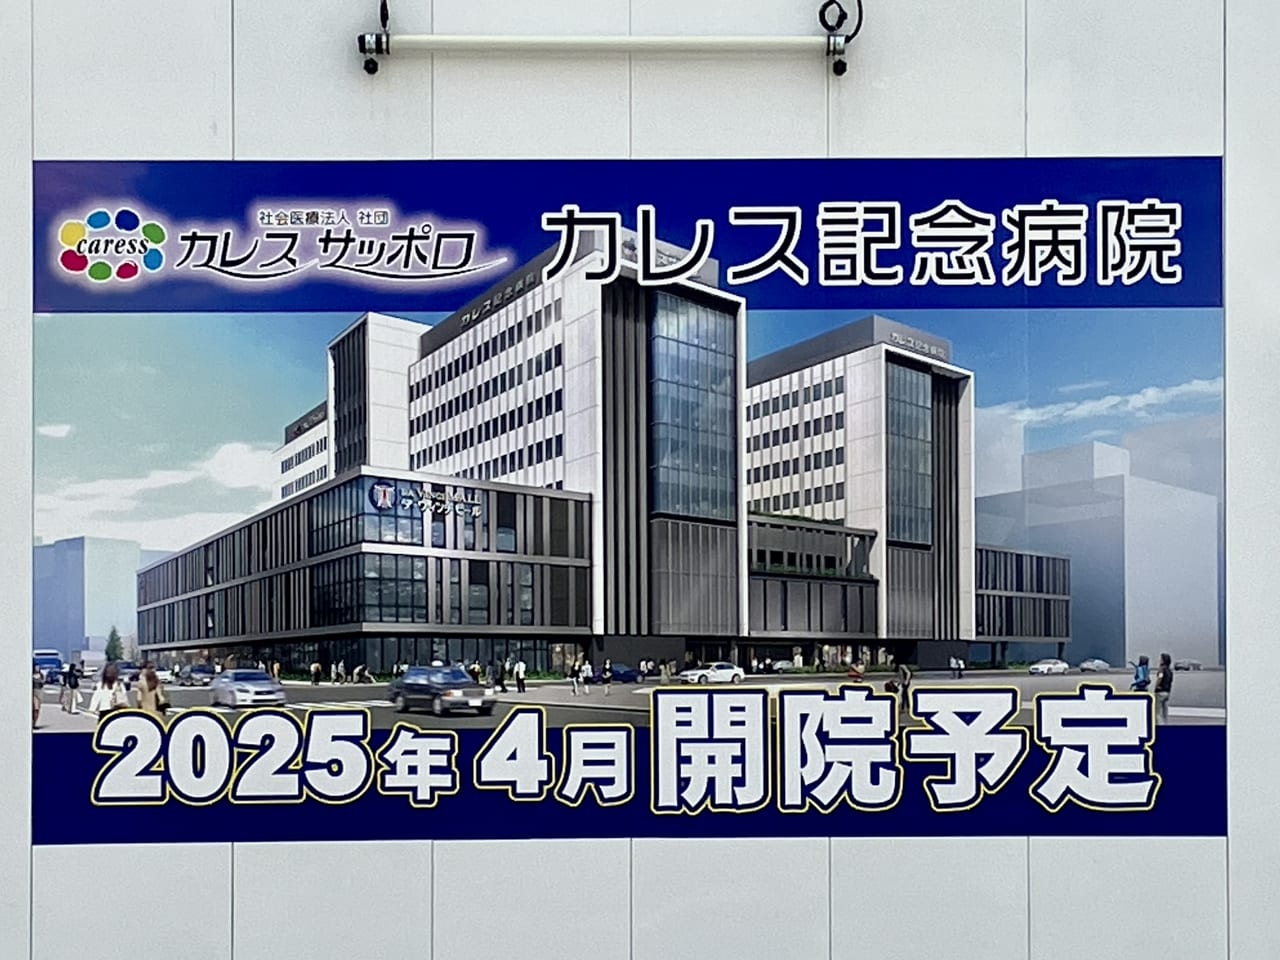 札幌駅周辺の開発がどんどん進んでいます。東区の再開発エリアに建設中の建物は病院でした。